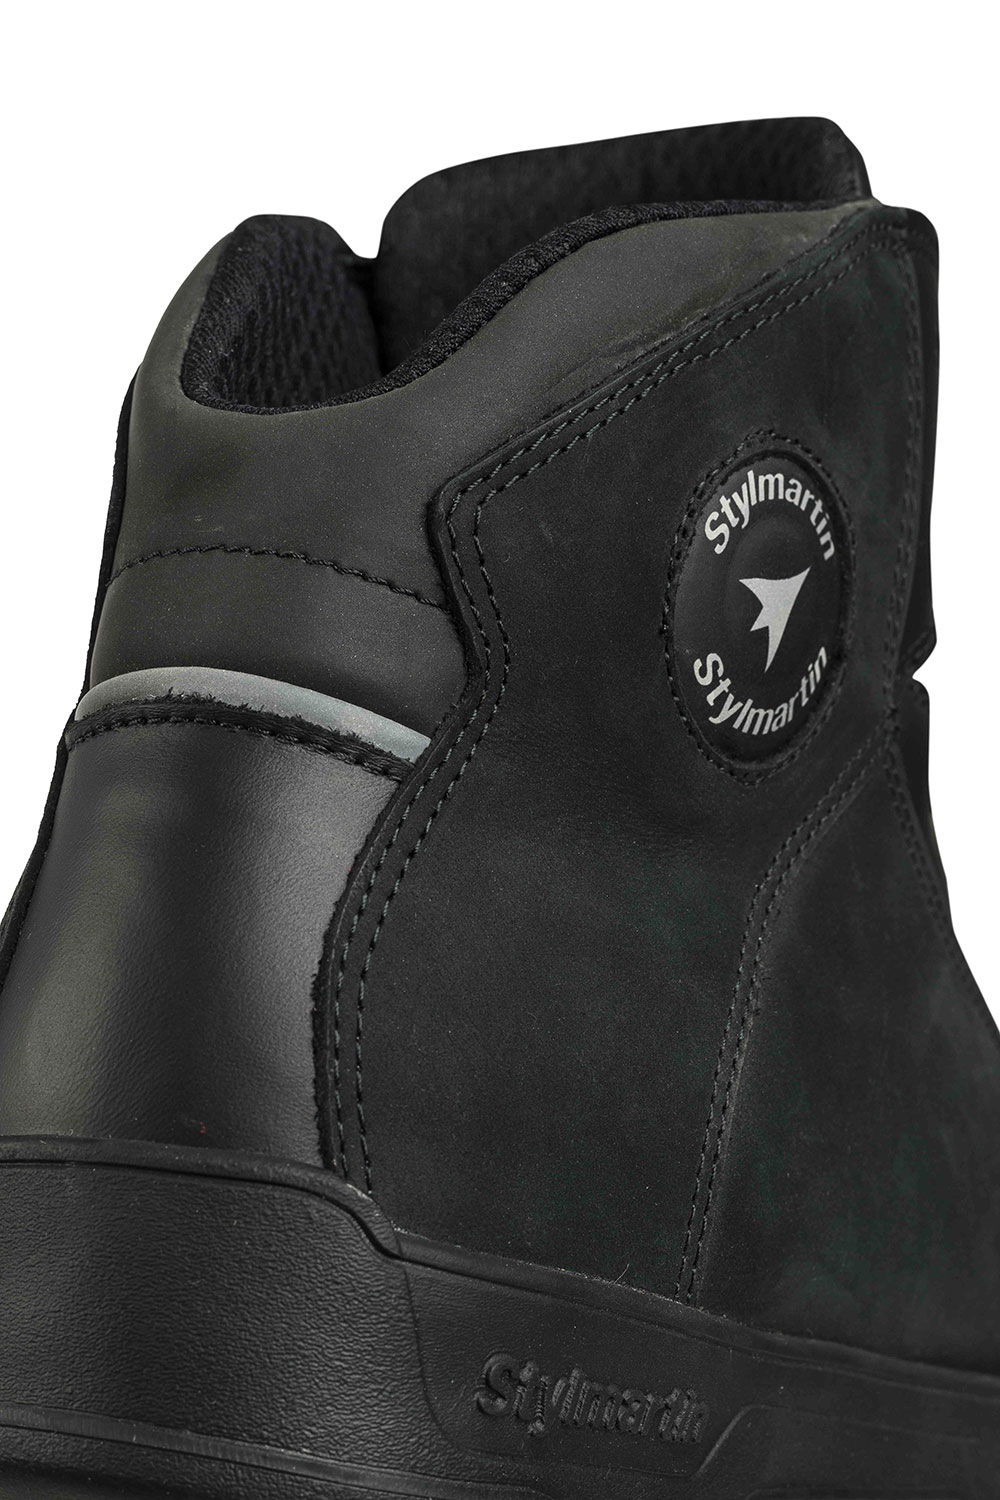 STYLMARTIN MATT WP BLACK - Waterproof Motorcycle Sneakers 2